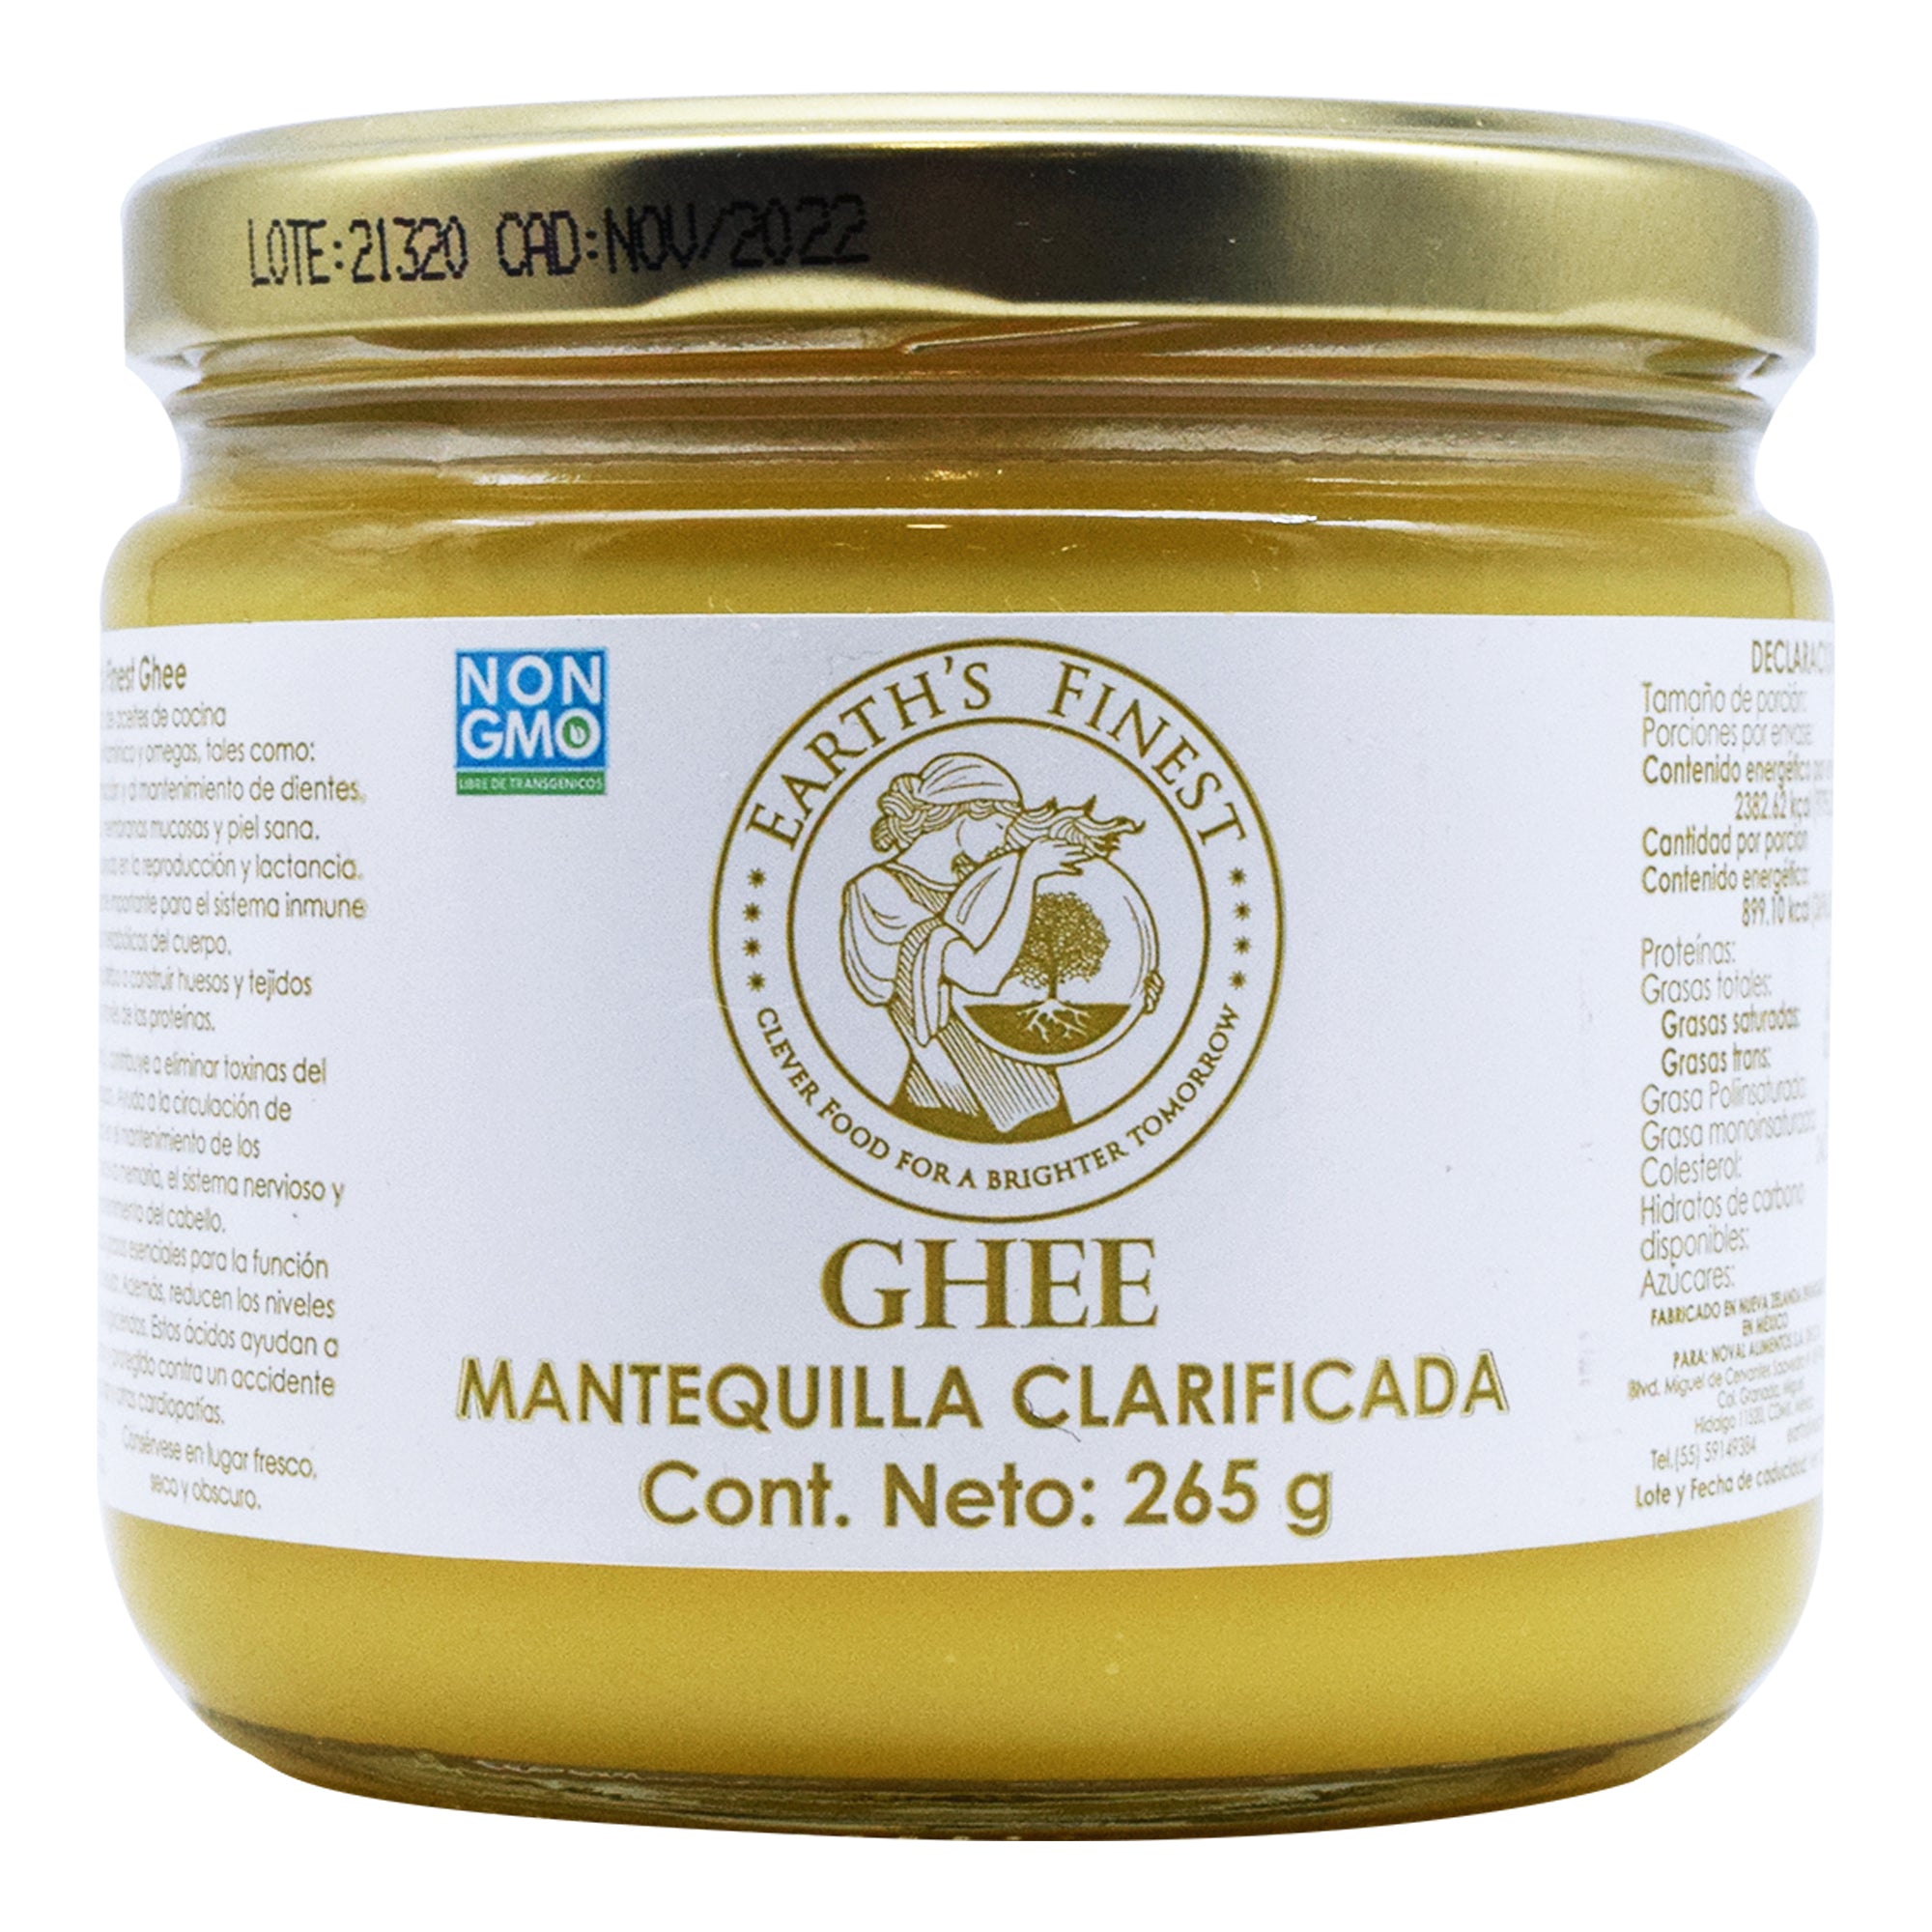 Mantequilla clarificada ghee 265 g